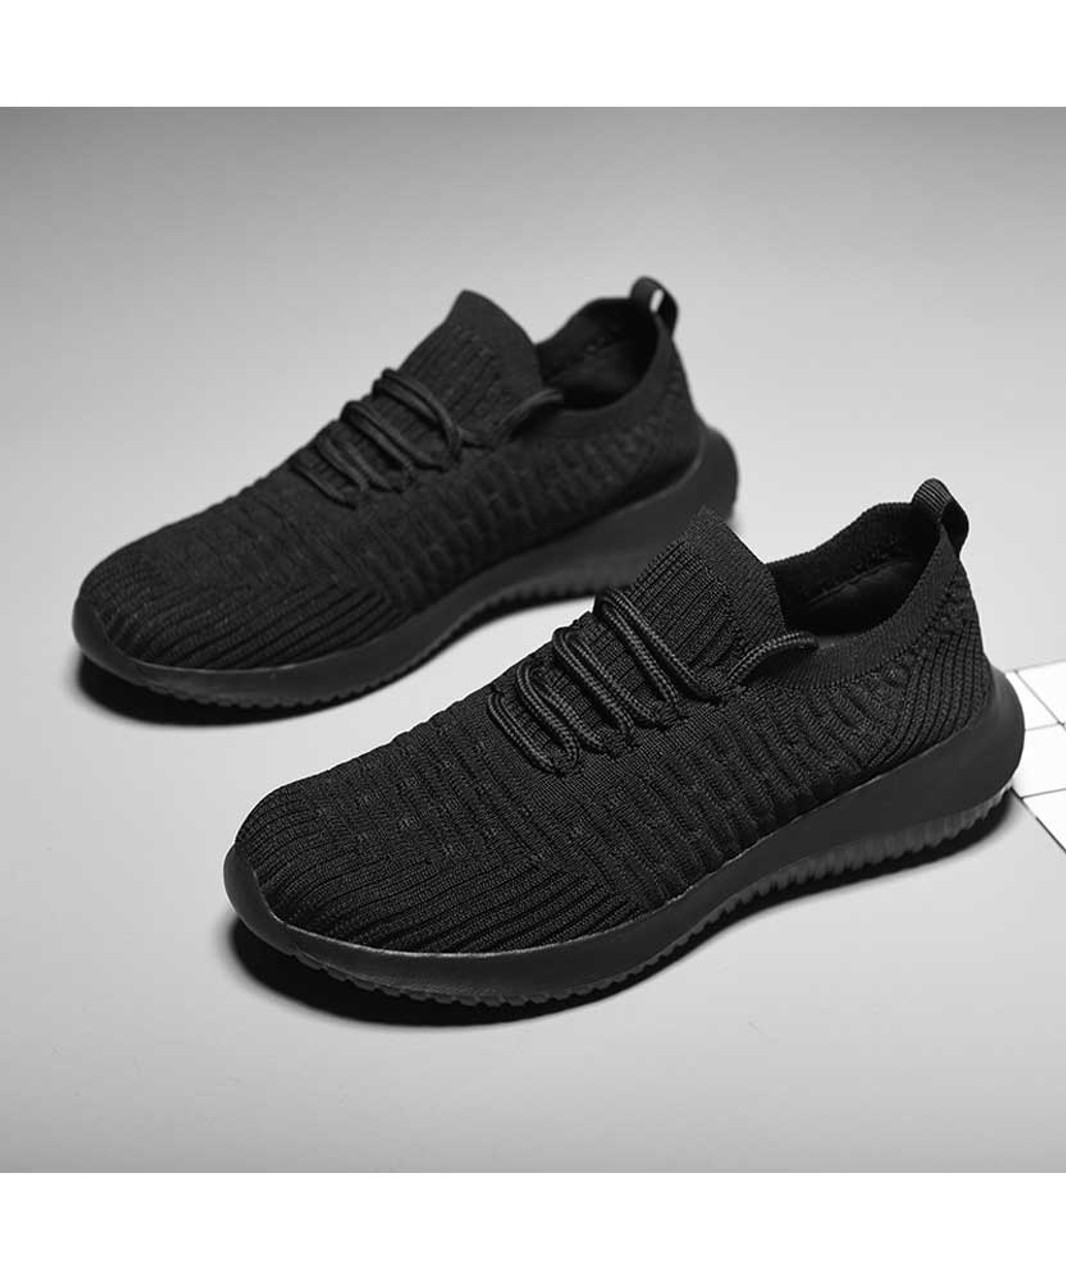 Black flyknit stripe texture sock like entry shoe sneaker | Womens shoe ...